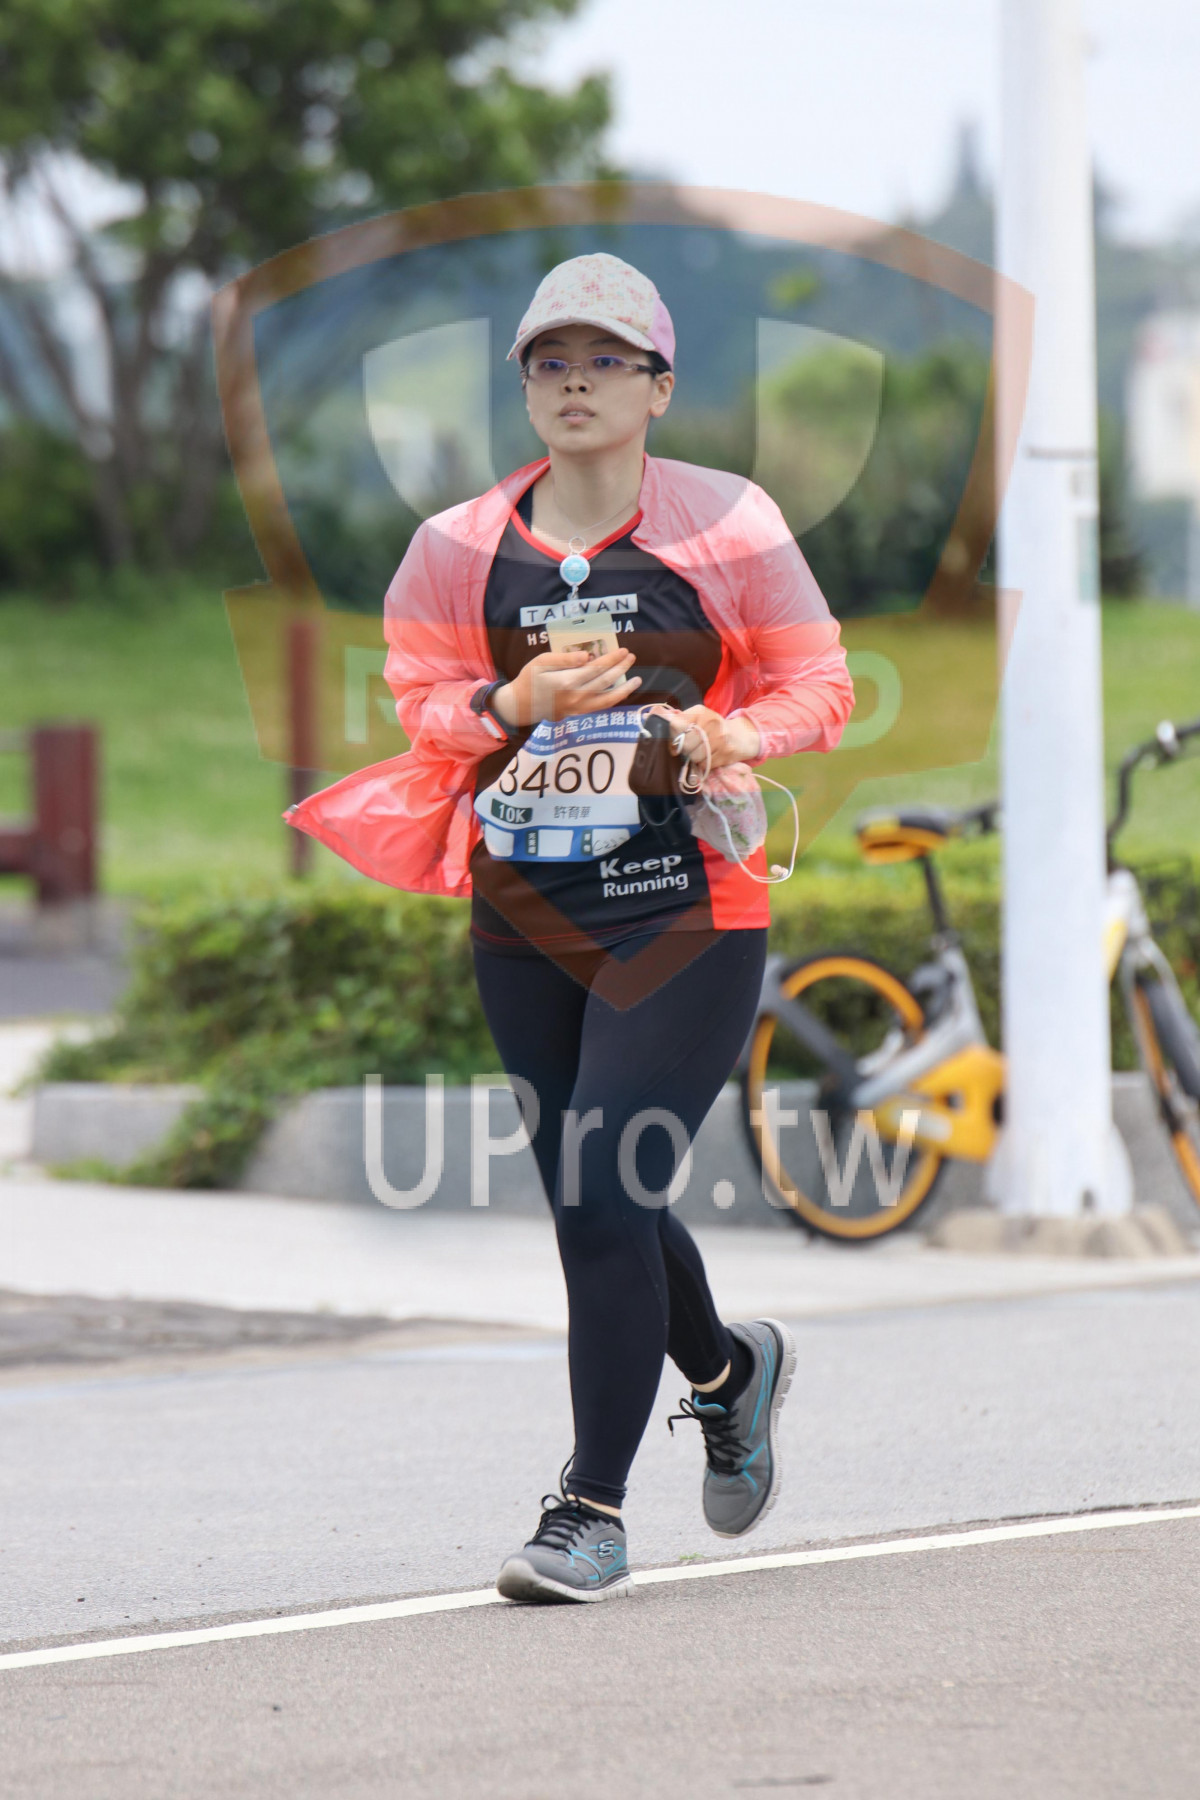 TAL V AN,,460,,Keep,Running|2018 第九屆阿甘盃公益路跑|Soryu Asuka Langley